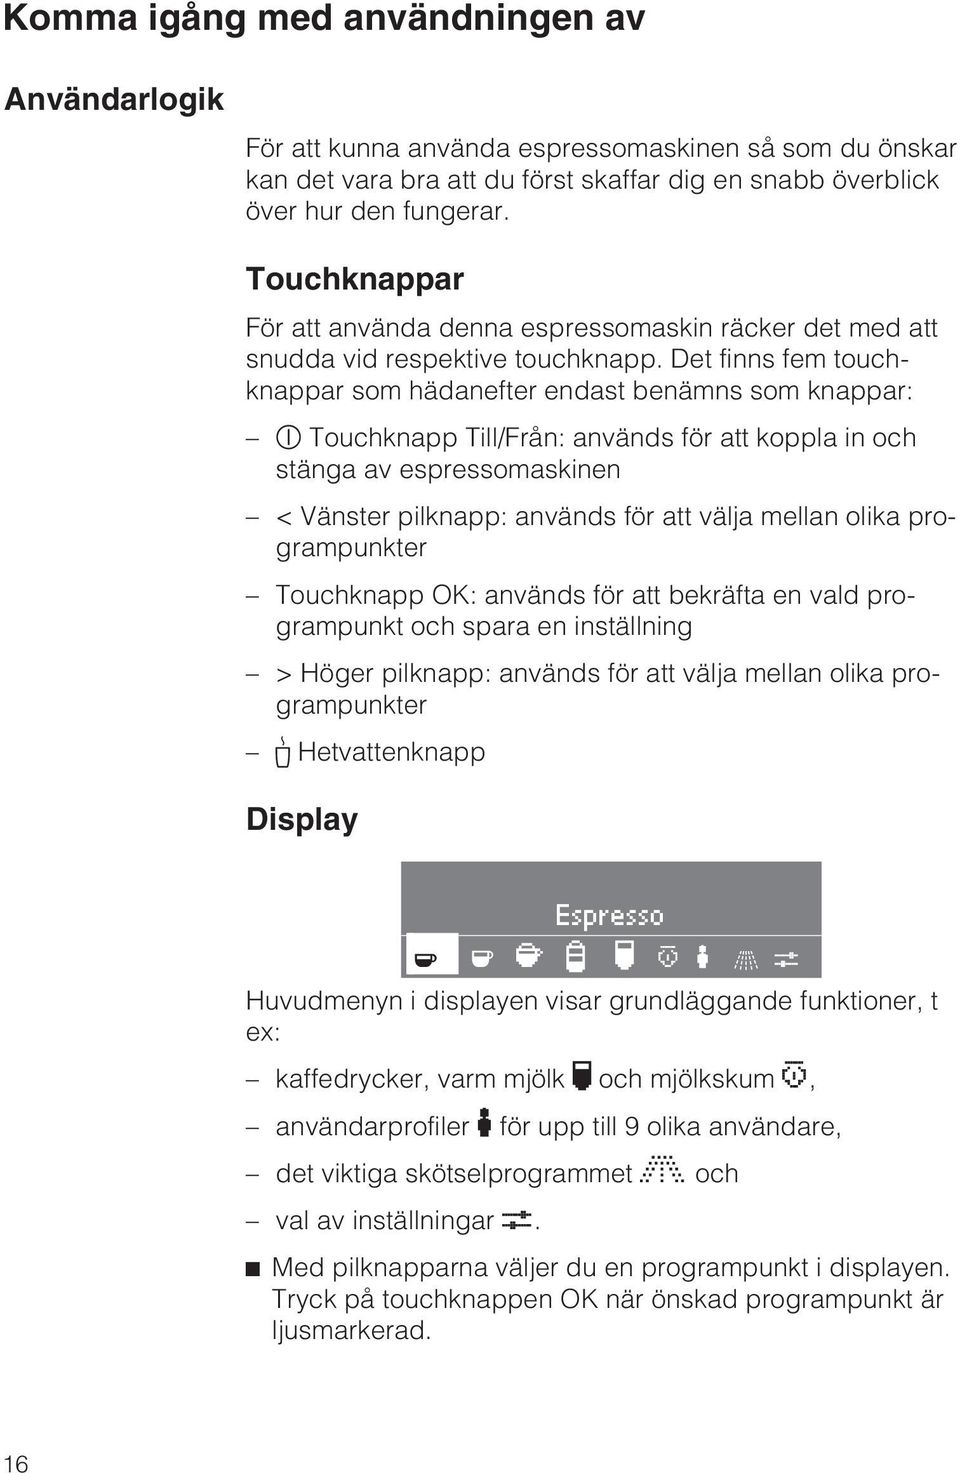 Det finns fem touchknappar som hädanefter endast benämns som knappar: s Touchknapp Till/Från: används för att koppla in och stänga av espressomaskinen < Vänster pilknapp: används för att välja mellan